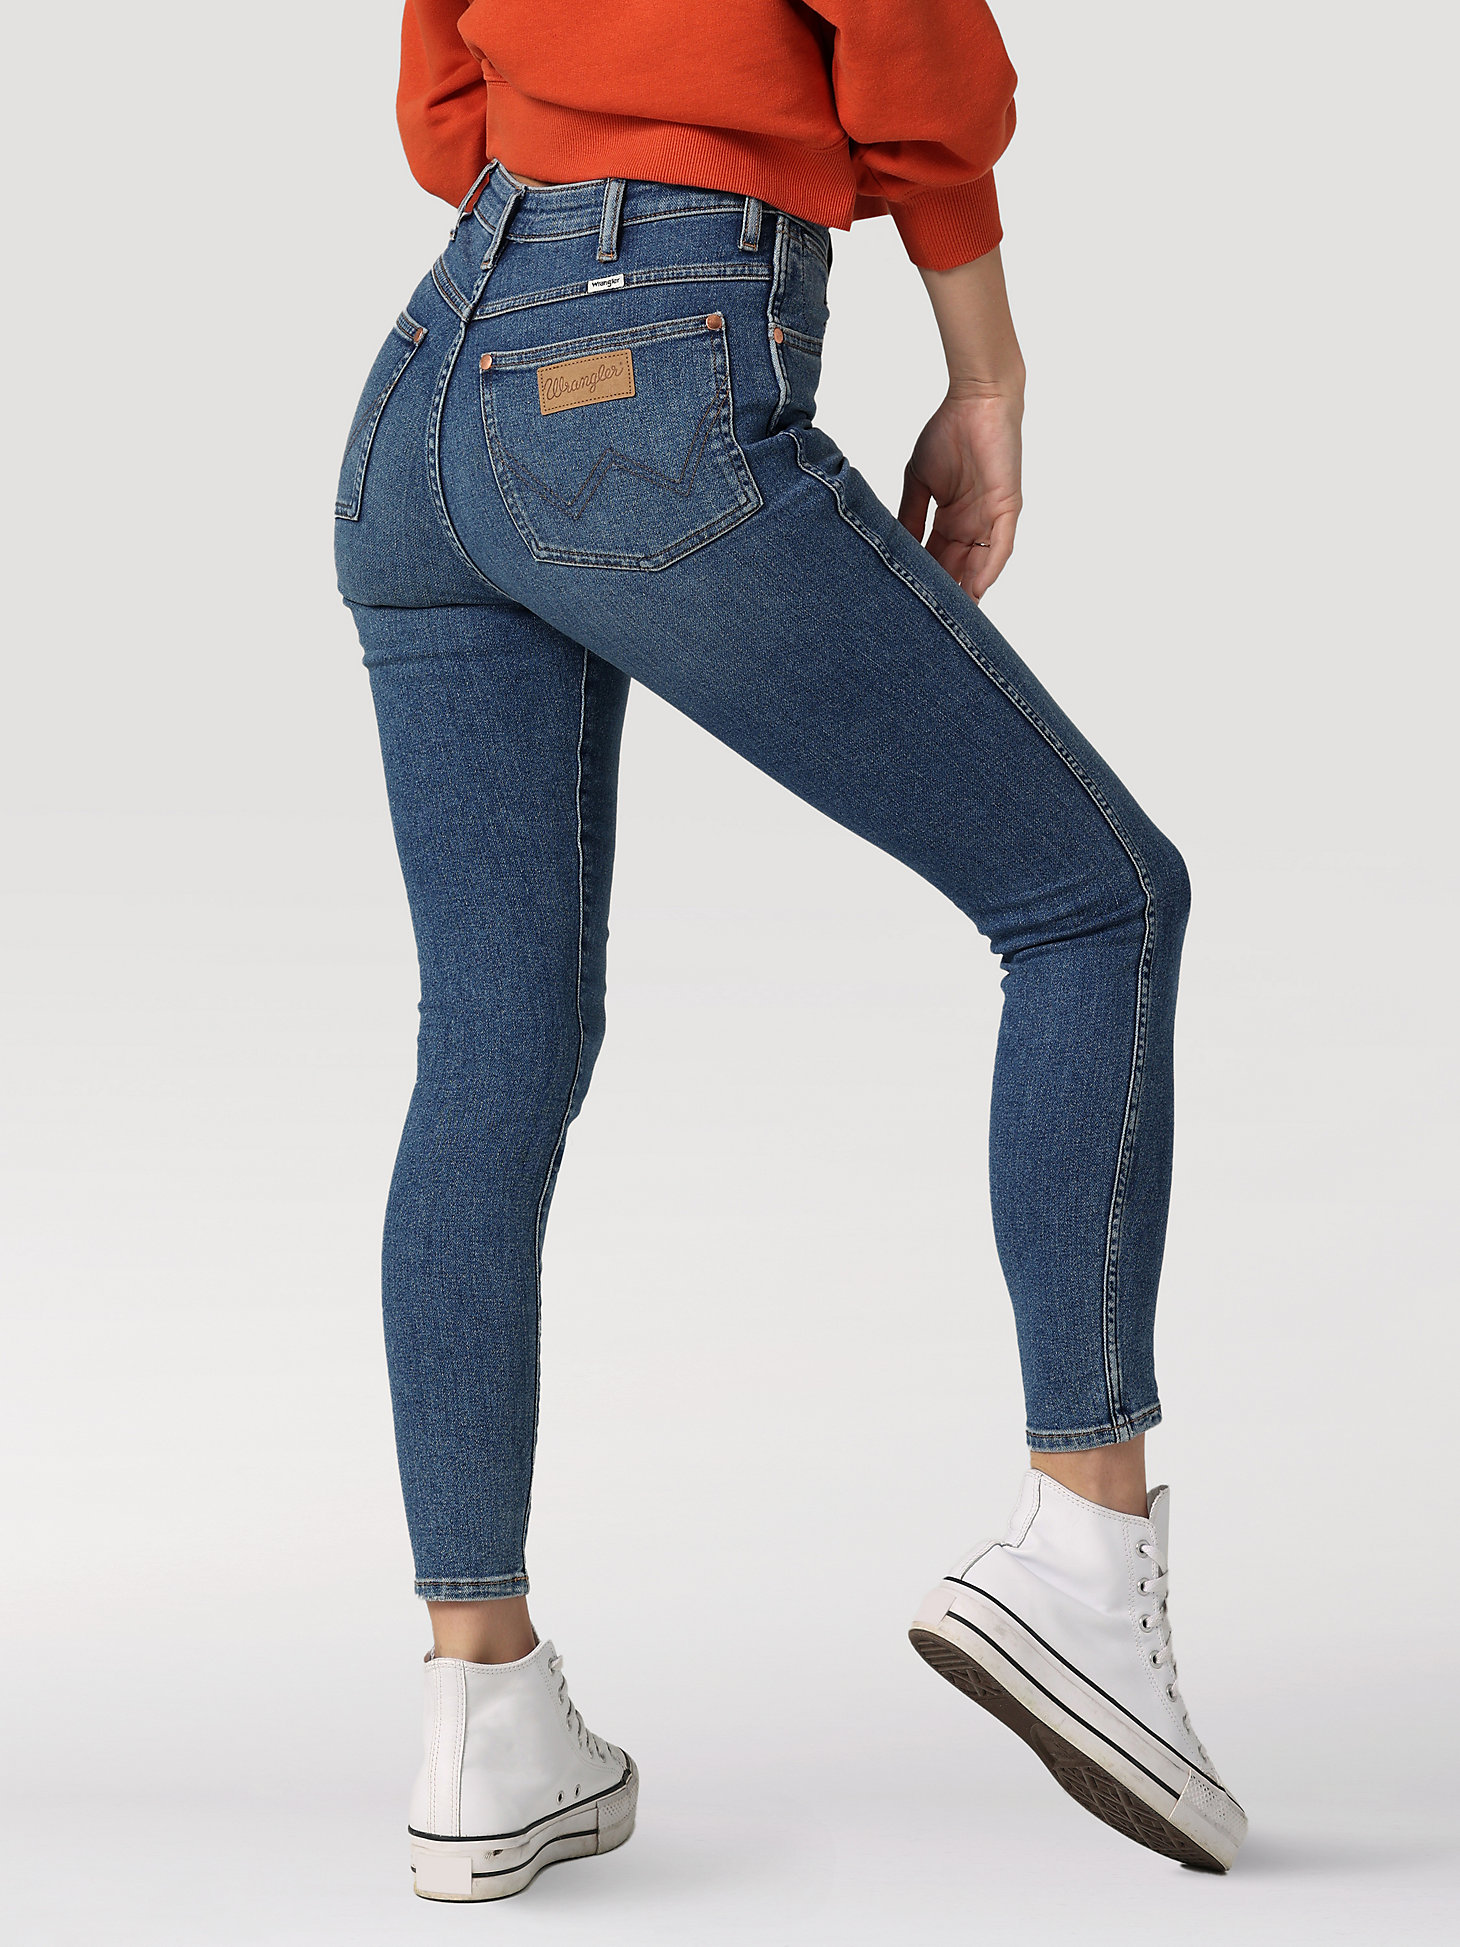 Wrangler Skinny jeans lichtgrijs-ros\u00e9goud casual uitstraling Mode Spijkerbroeken Skinny jeans 